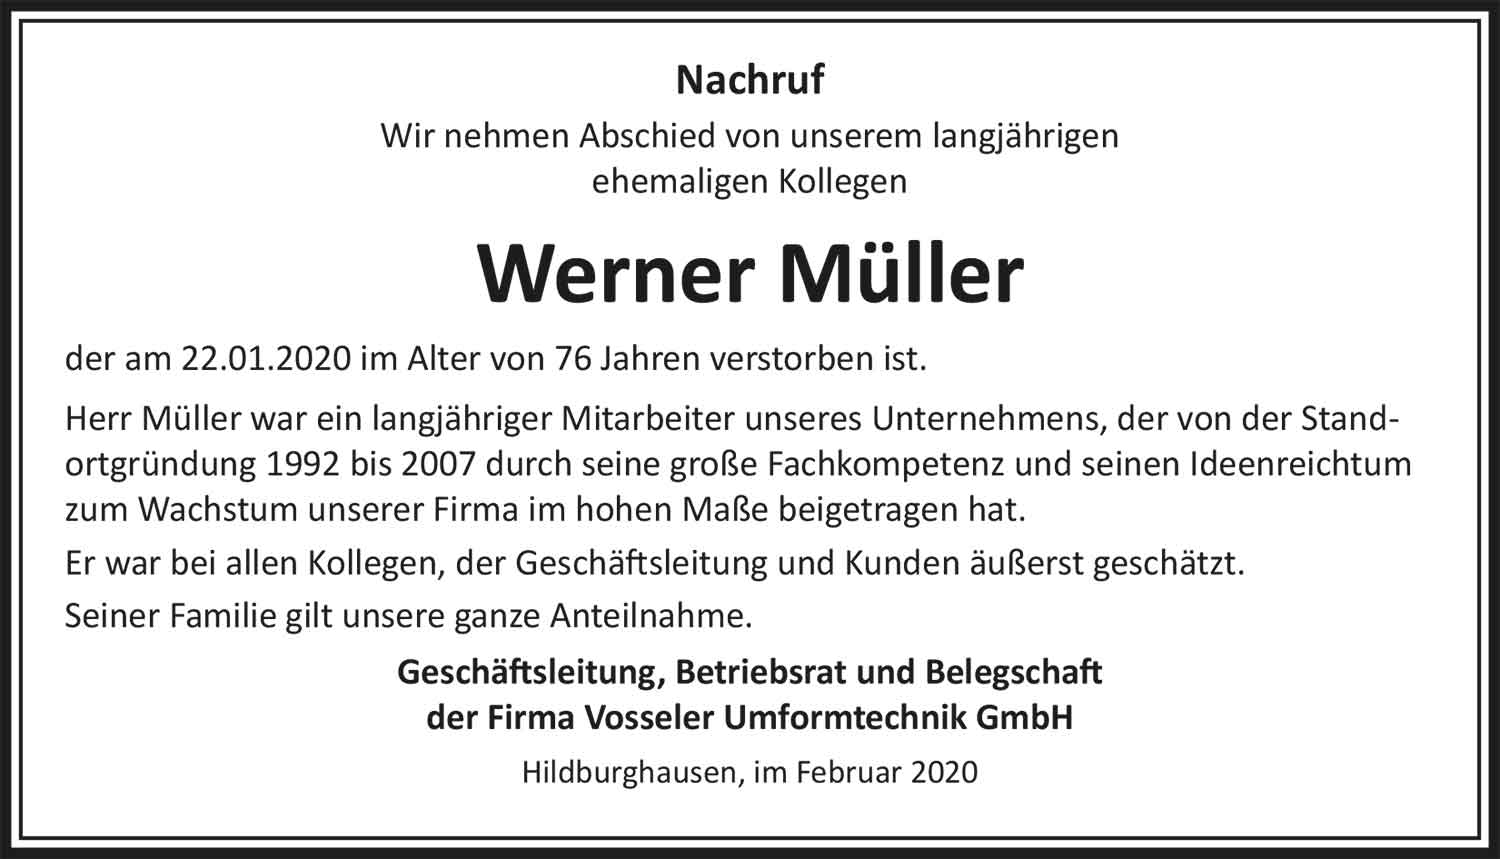 Nachruf_Mueller_Werner_07_20